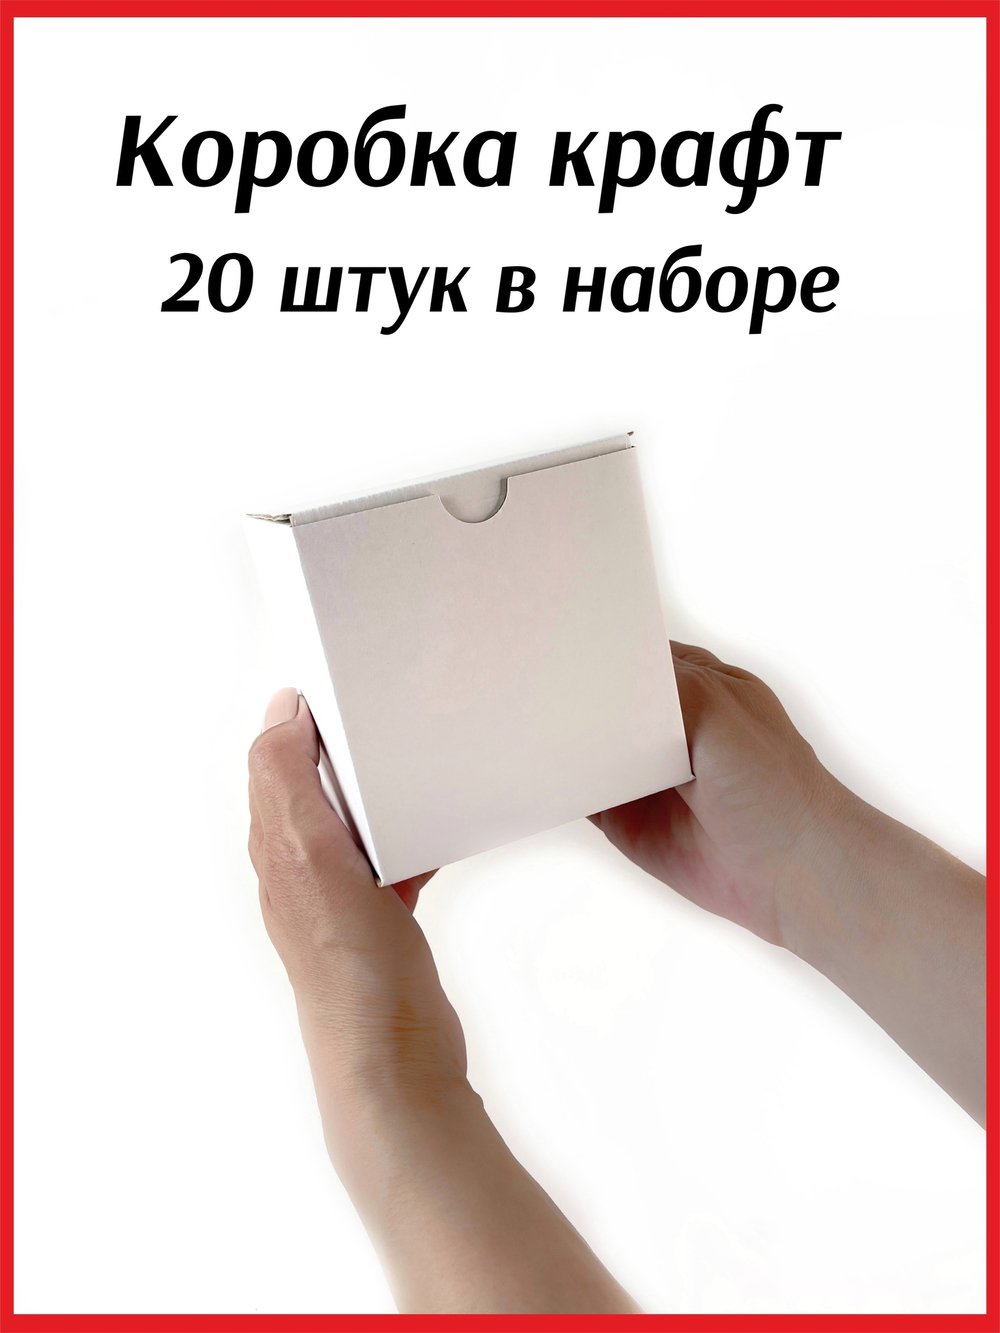 Коробка самосборная из микрогофрокартона 10*10*10 мм